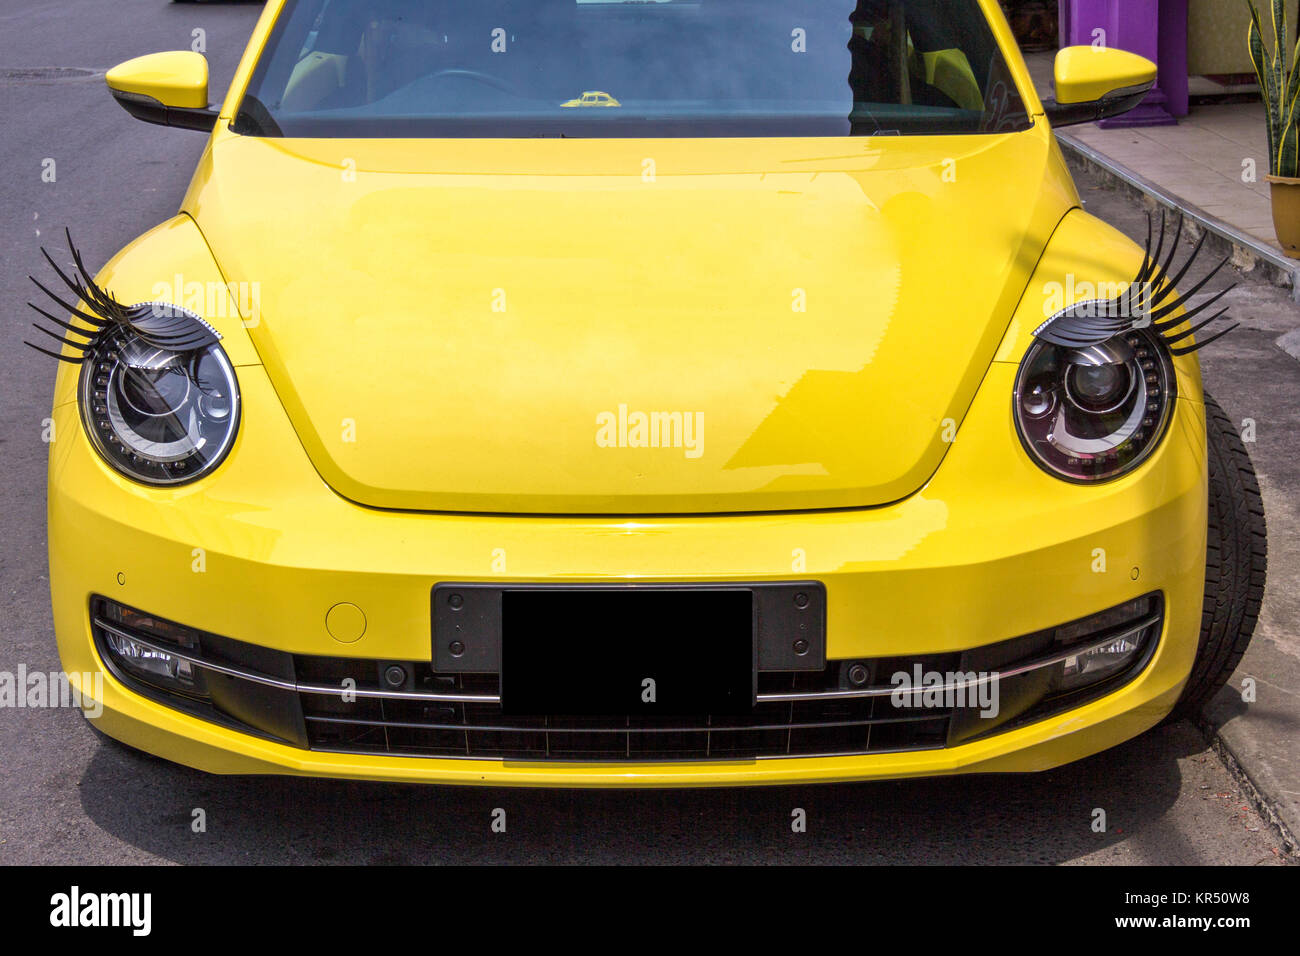 Auto Scheinwerfer Wimpern auf Volkswagen Beetle Auto Stockfotografie - Alamy